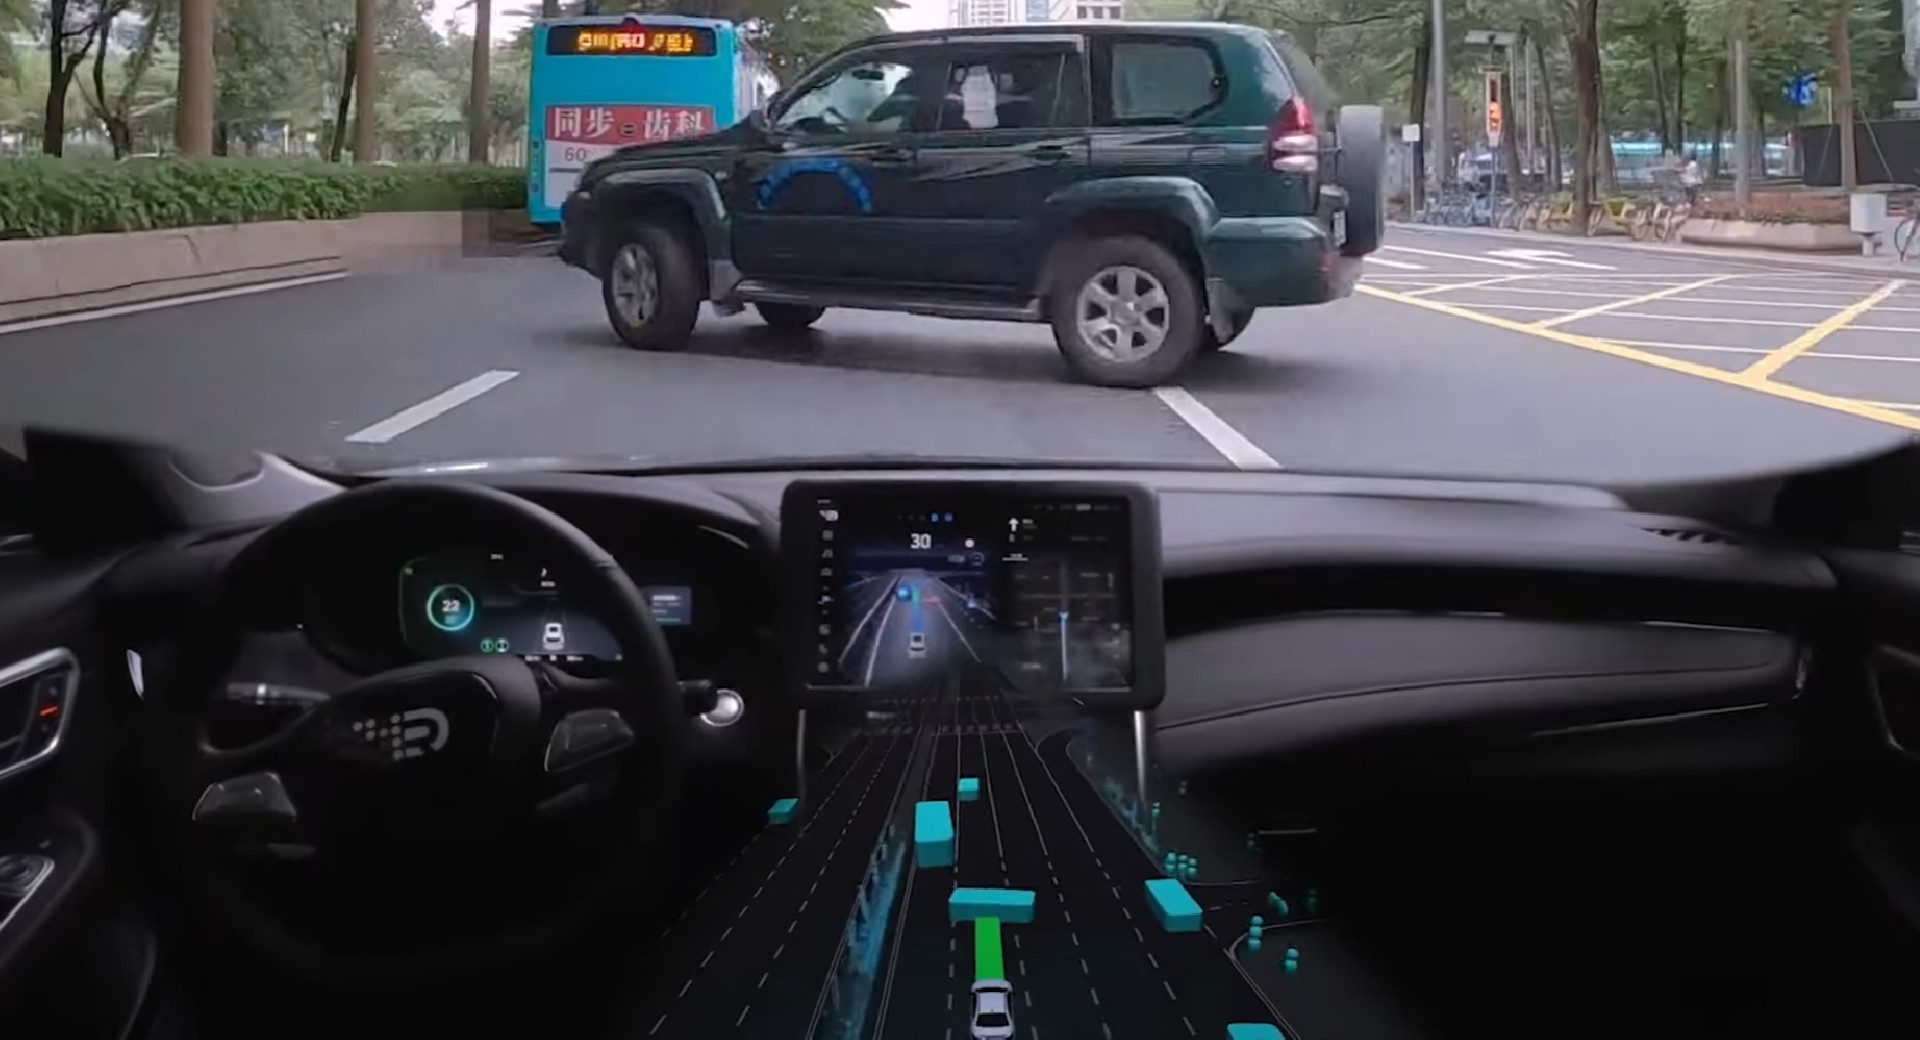 DeepRoute Autonomous Car Video 3 - Auto Recent